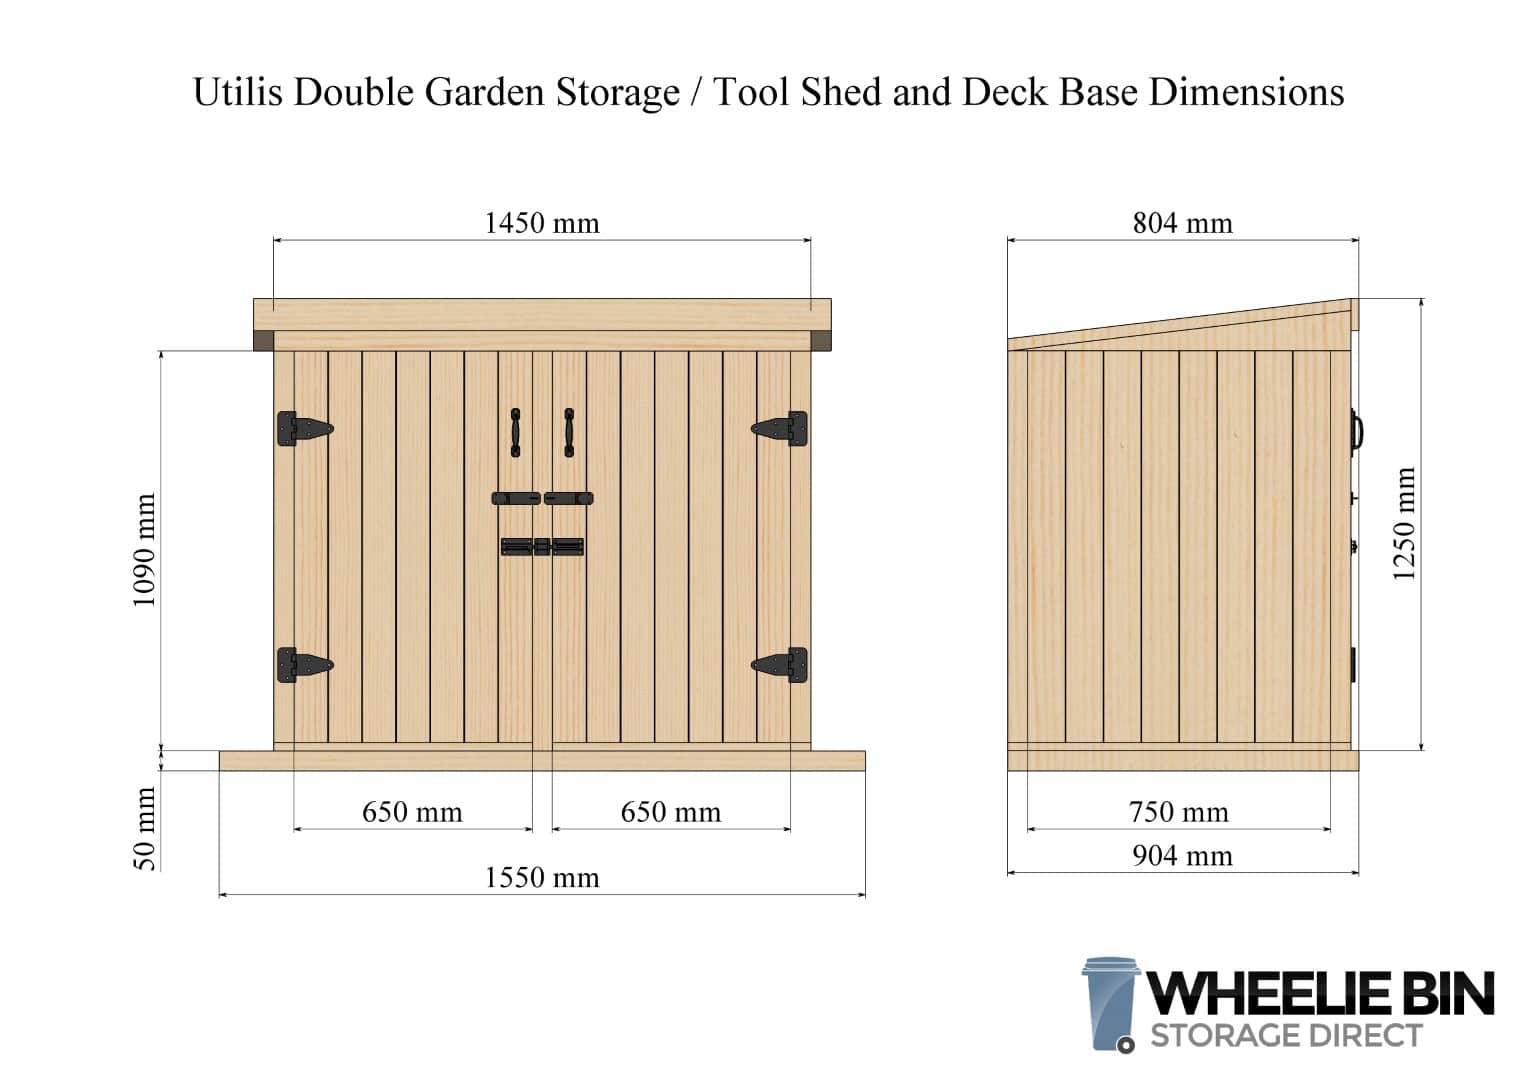 Utilis Double Garden Store Dimensions